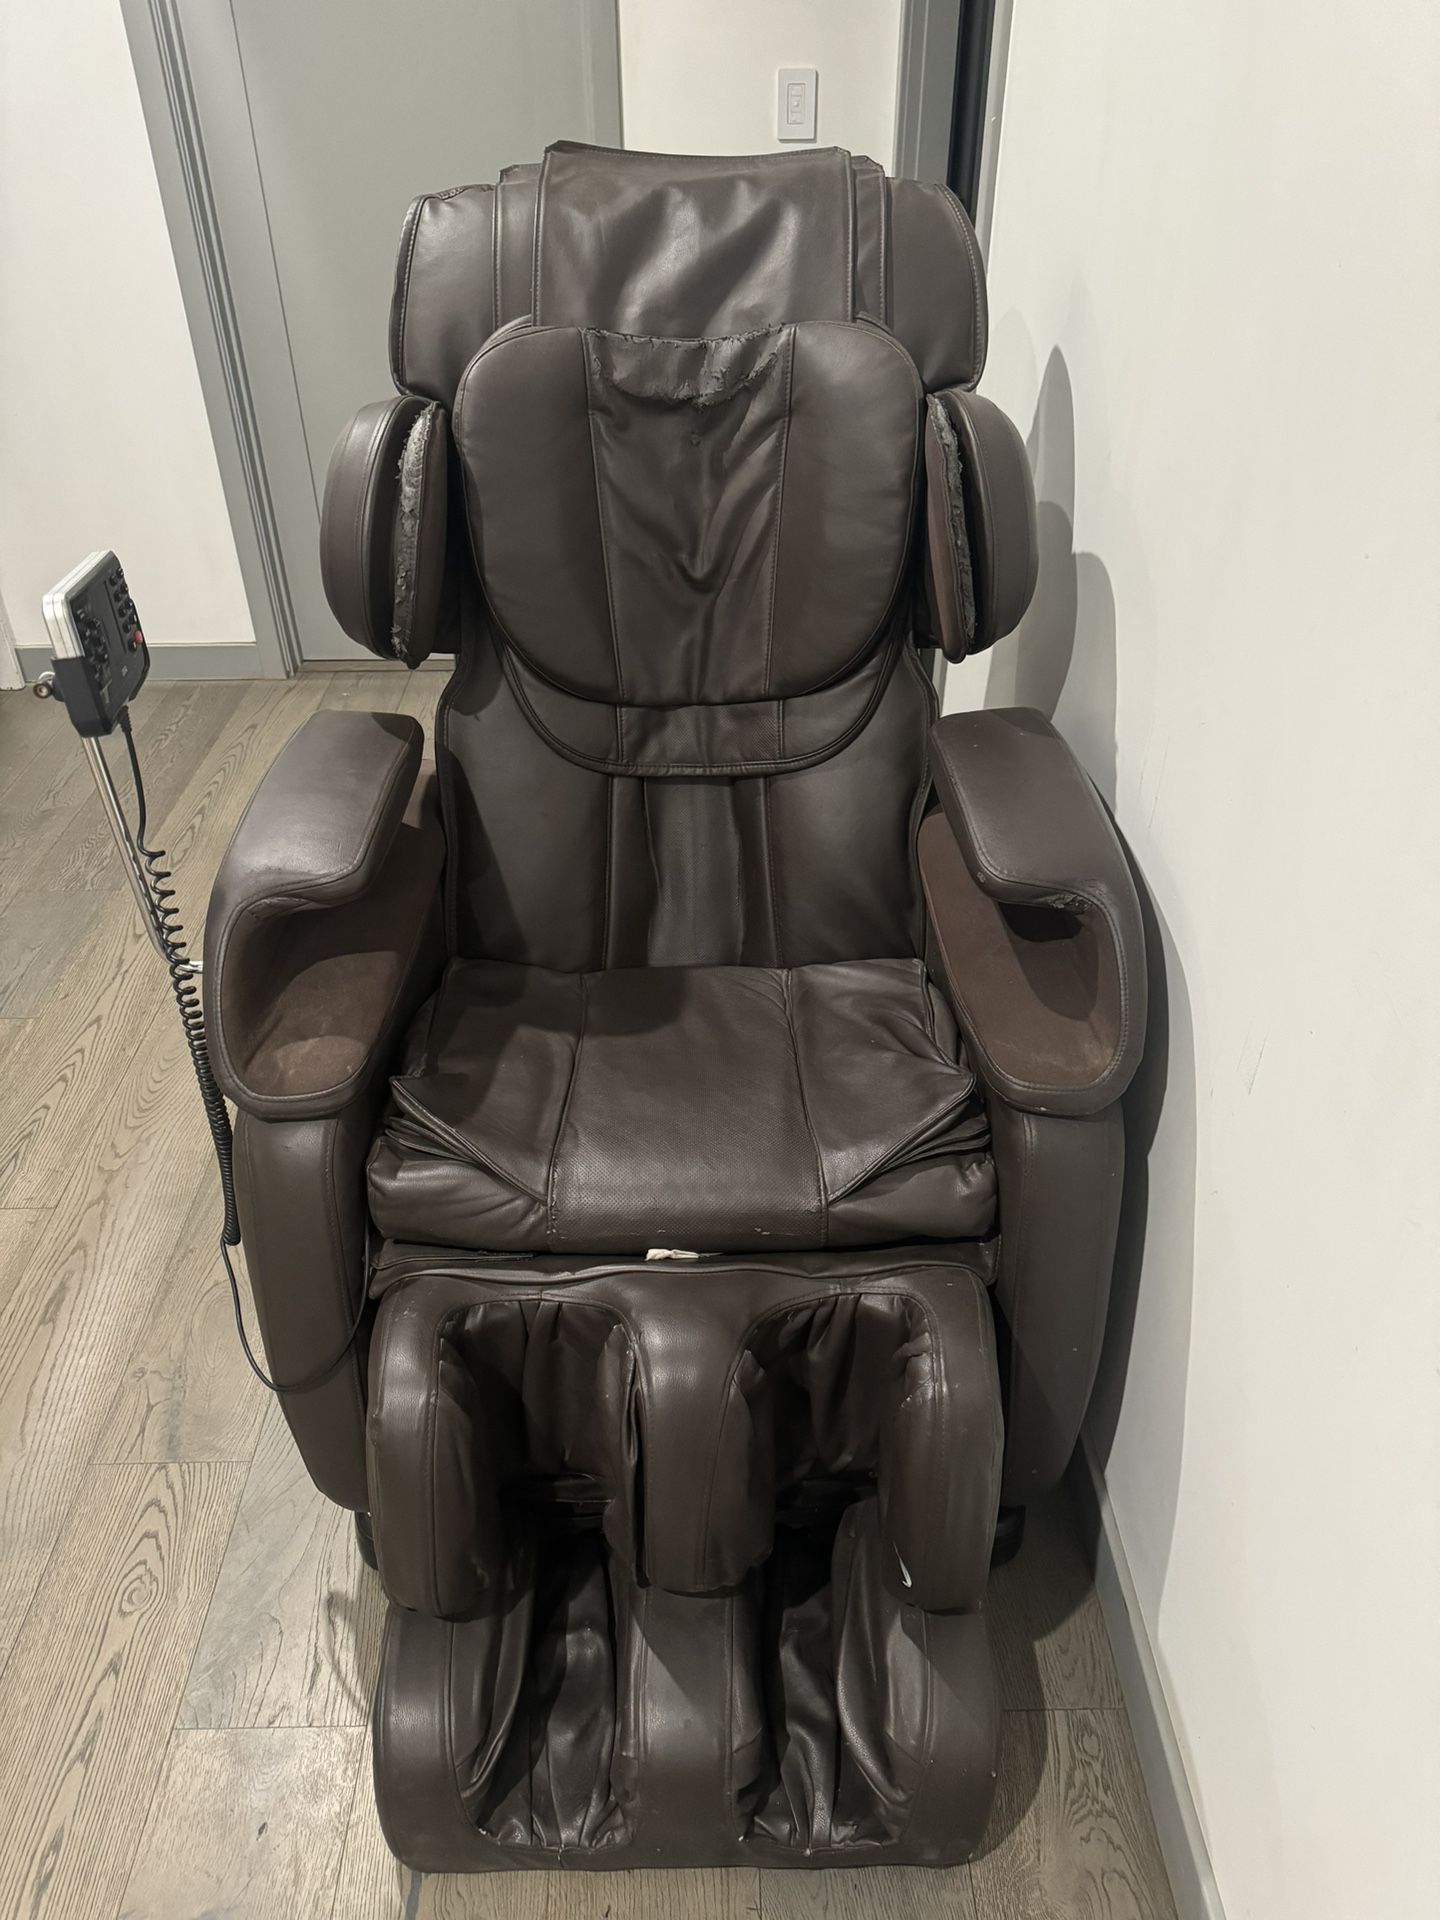 Ideal massage chair